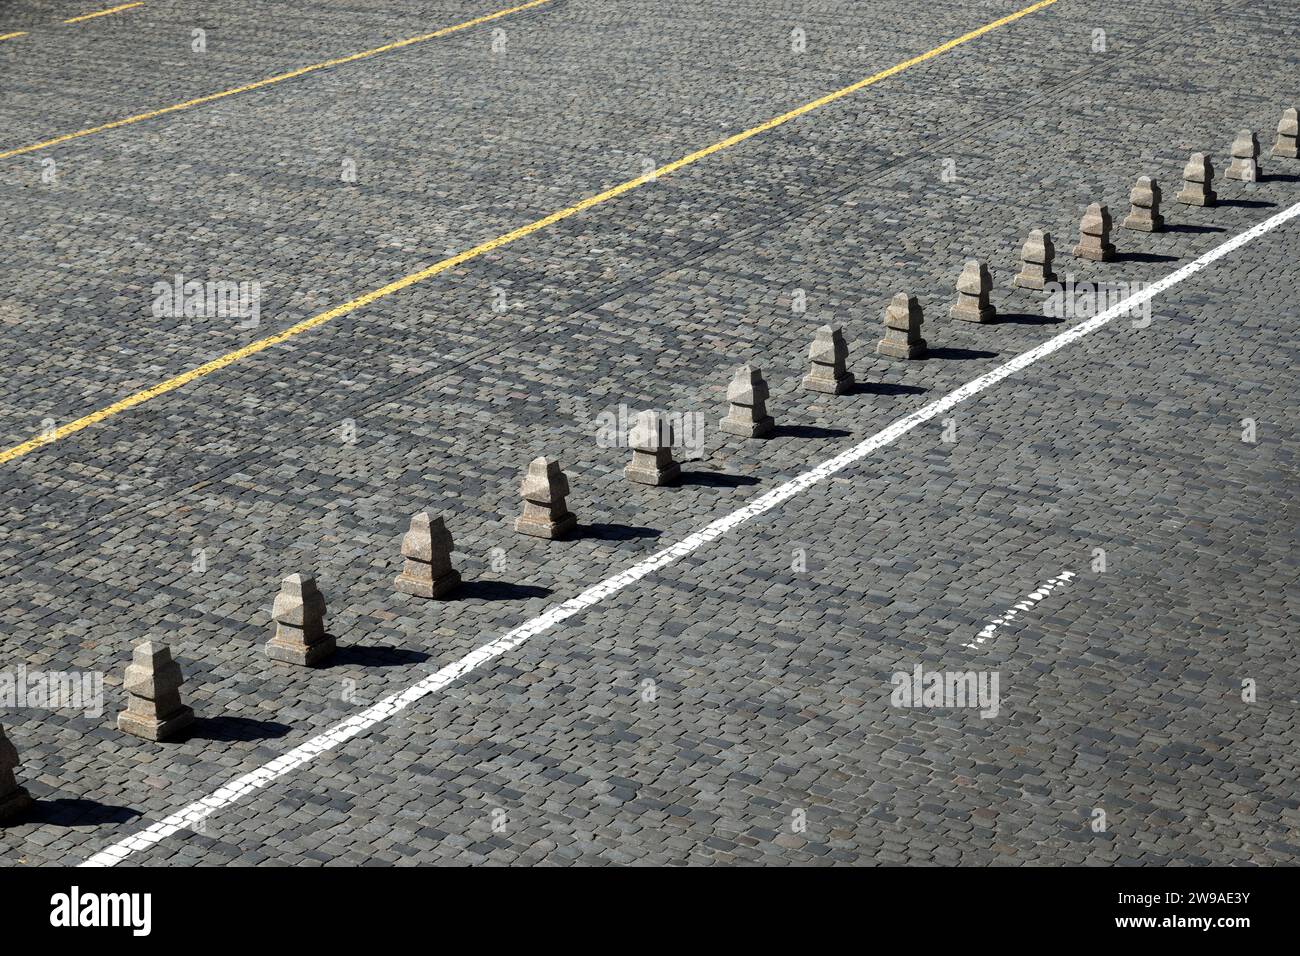 Barriera dalle piramidi di granito dopo una lunga linea bianca sulla vista laterale della pavimentazione stradale in pietra Foto Stock